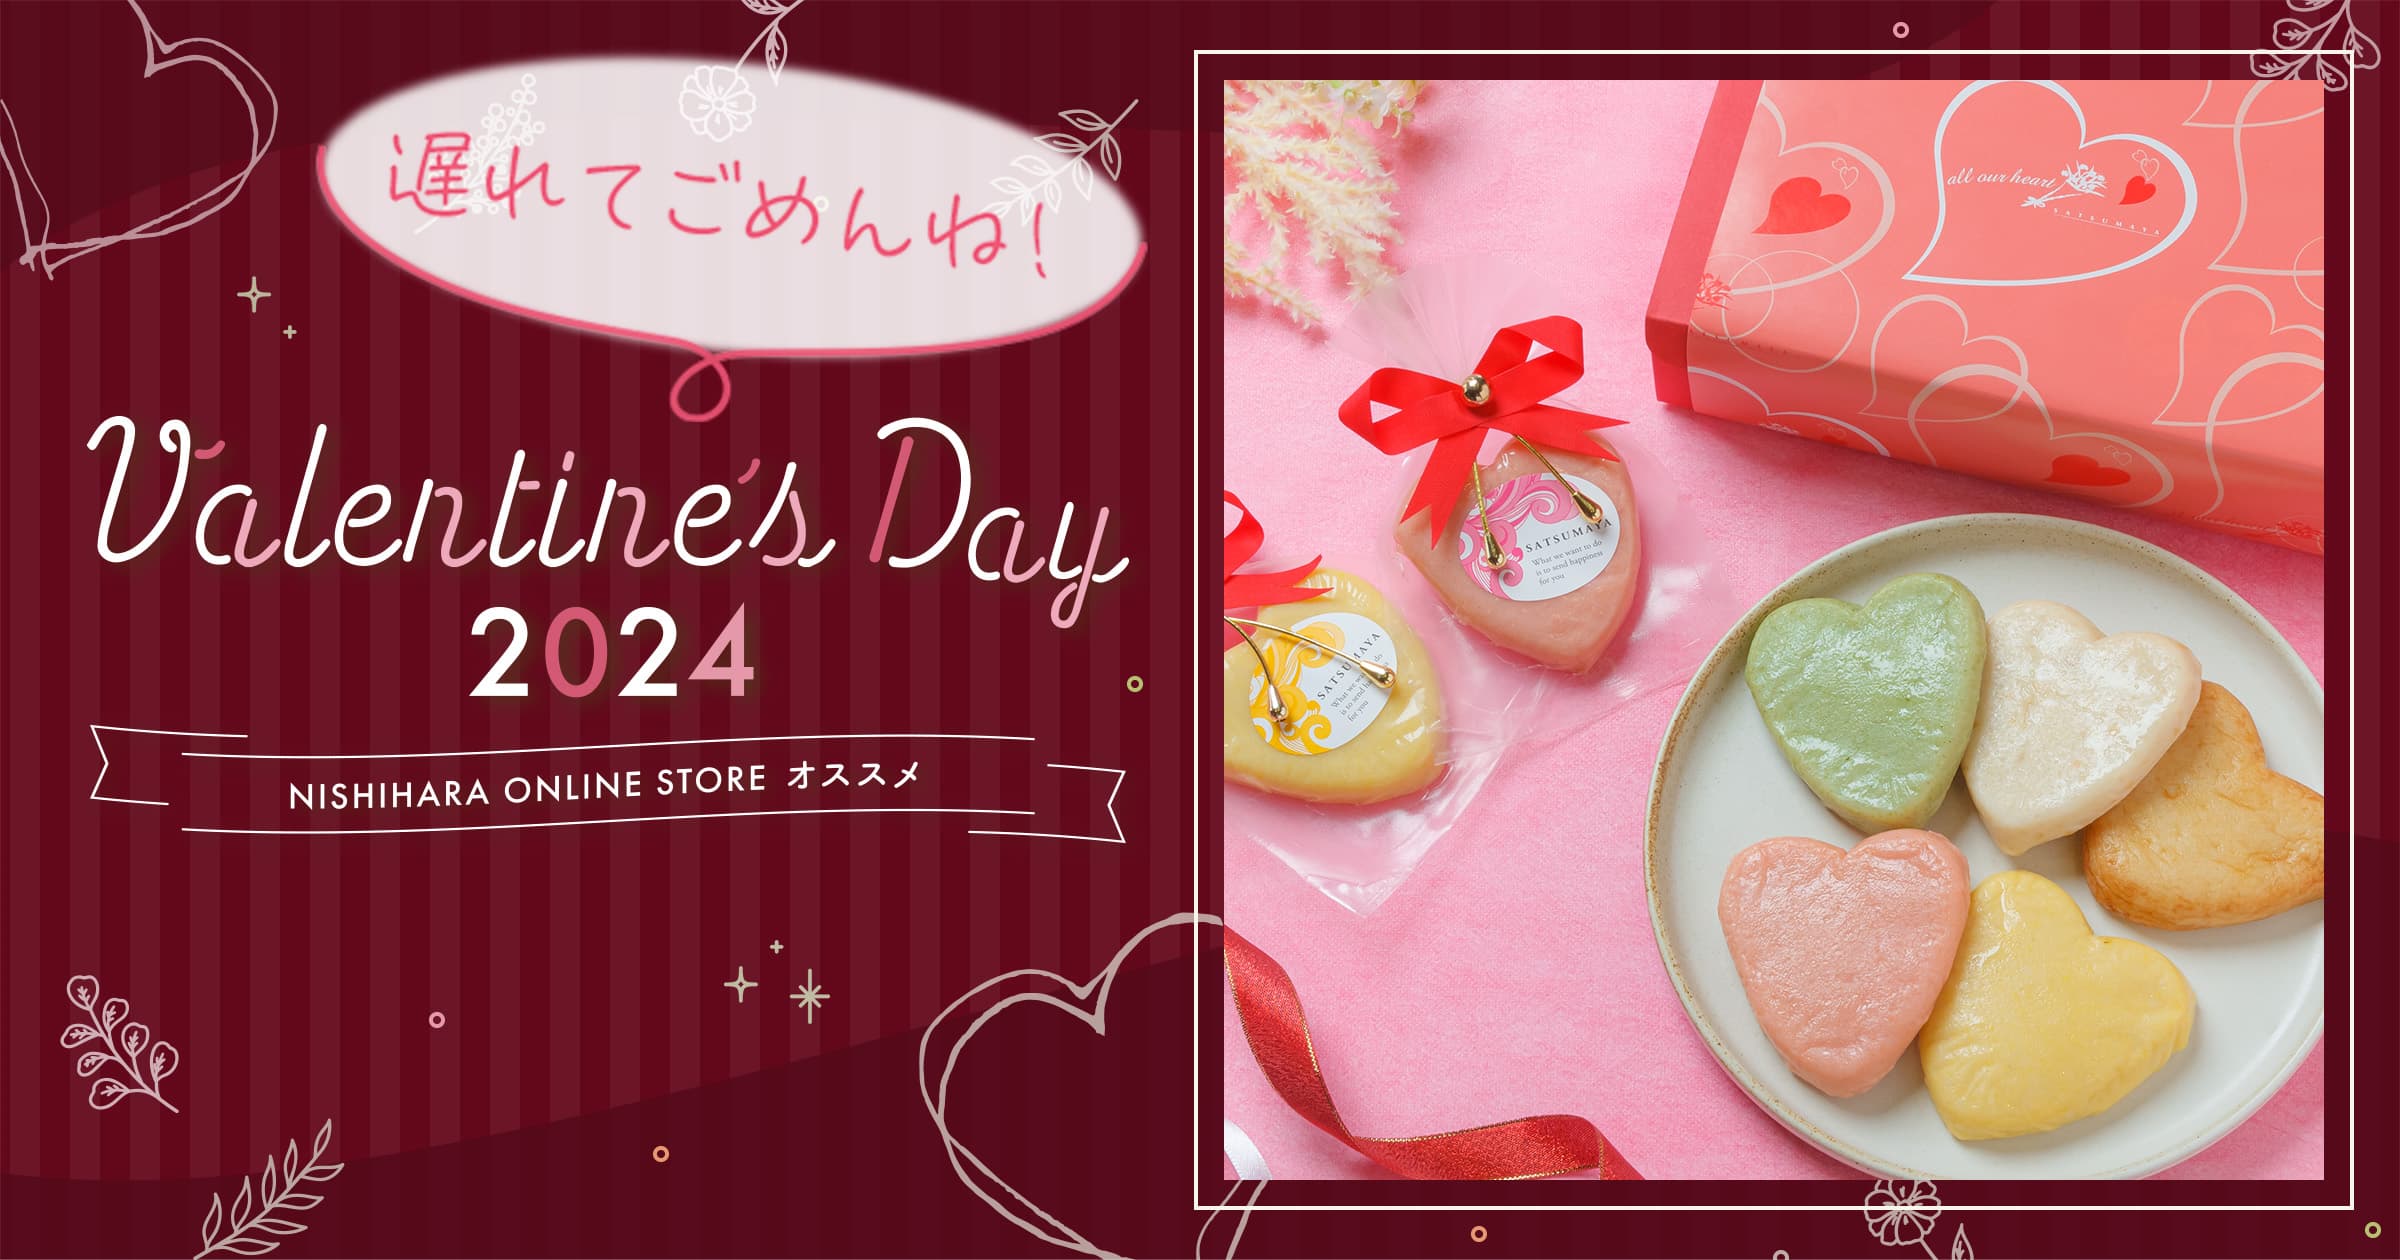 Valentaine Day 2024 NISHIARA ONLINE STORE オススメ